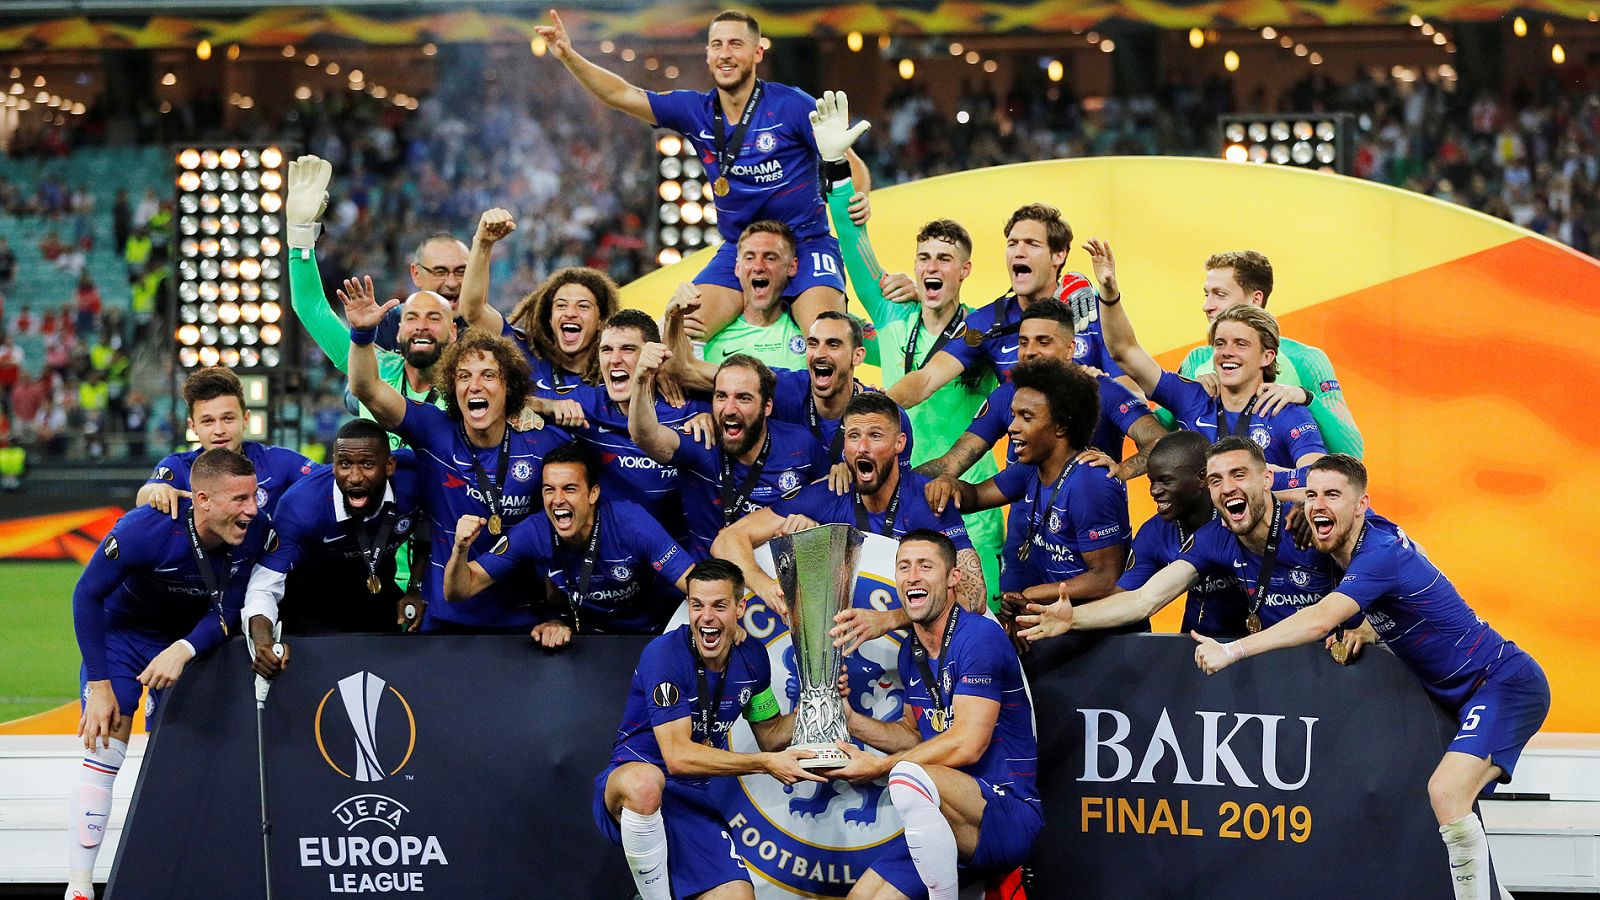 Azpilicueta (con el brazalete de capitán) y Cahill sujetan el trofeo de la Europa League que ha ganado el Chelsea